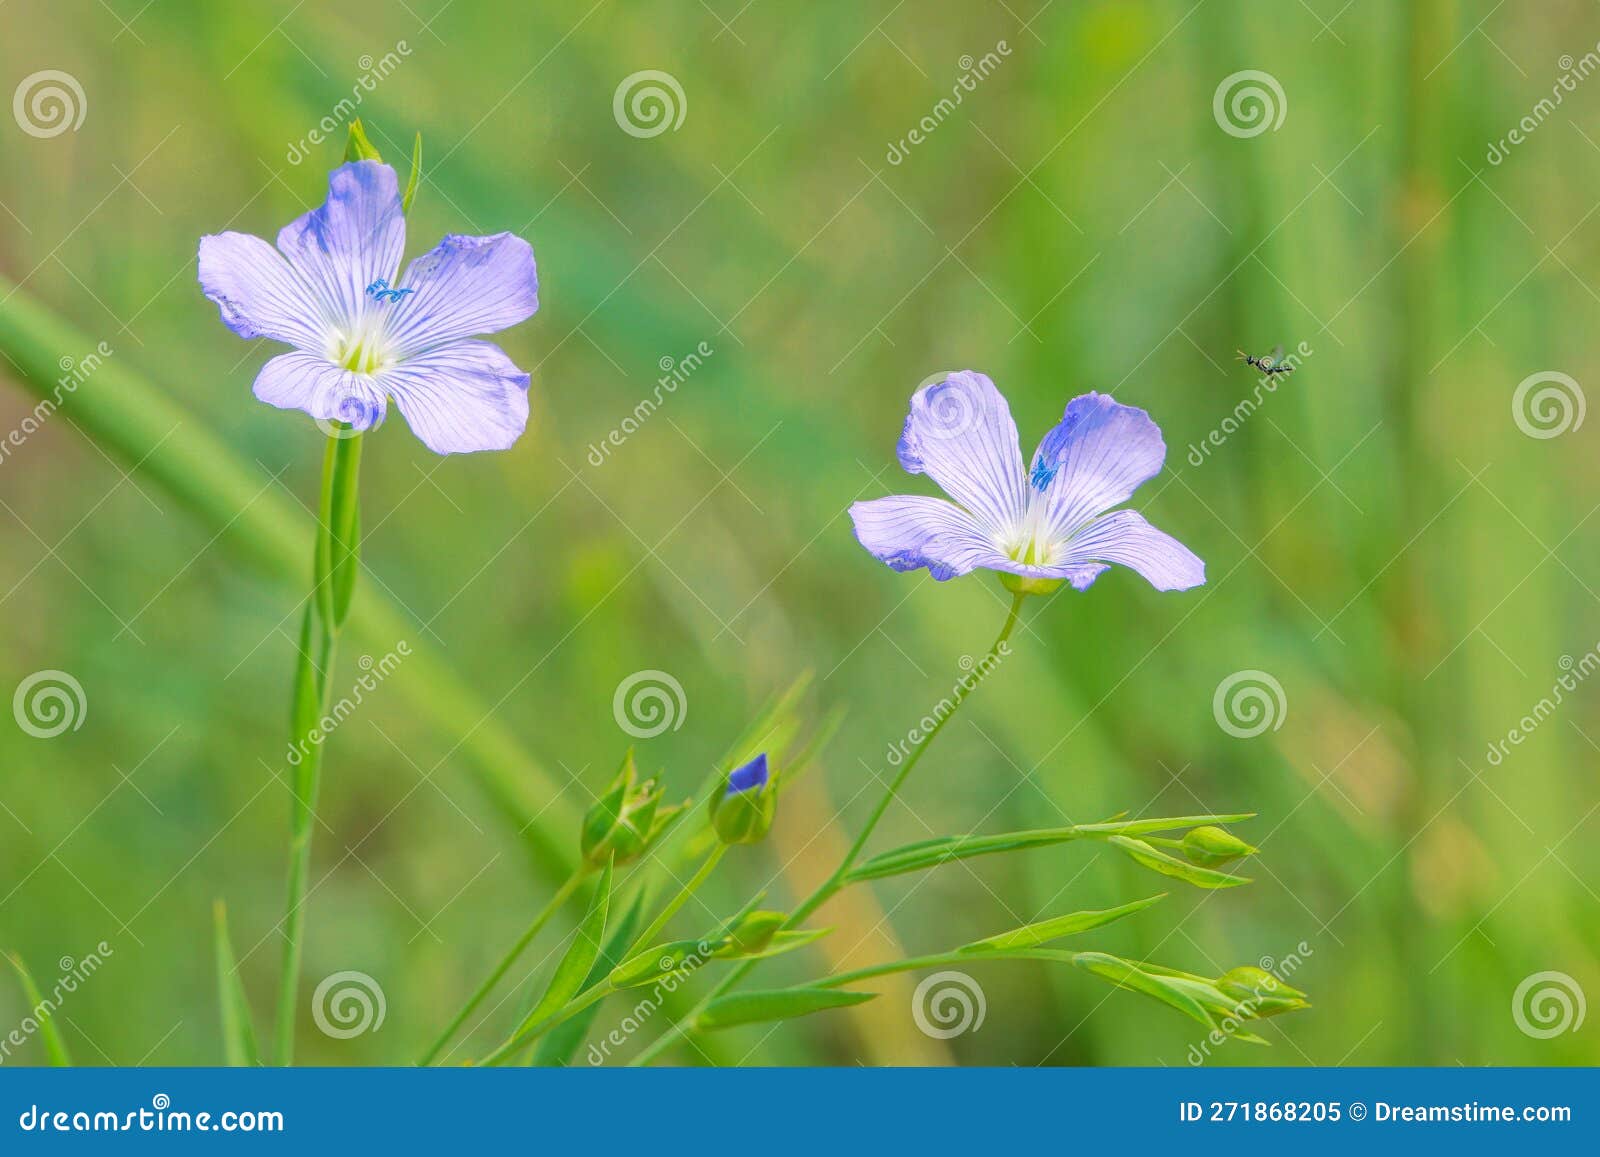 Sesamum indicum stock image. Image of blue, herb, plant - 271868205